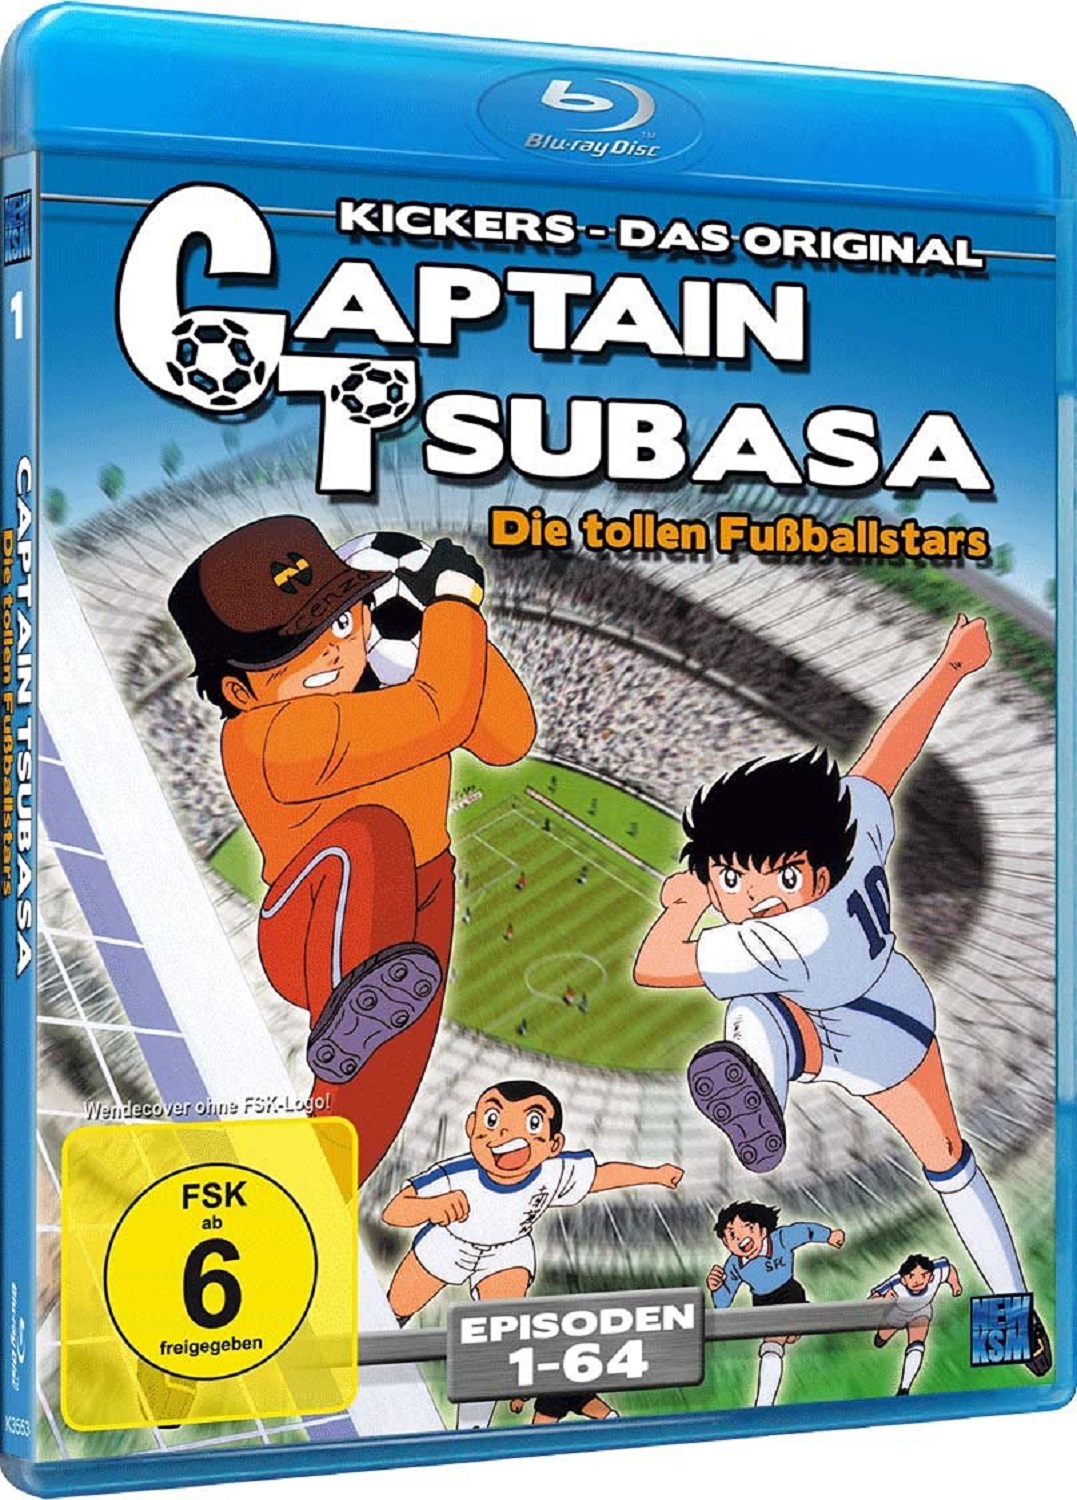 Captain Tsubasa: Die tollen Fußballstars - Episoden 01-64 Blu-ray Image 6